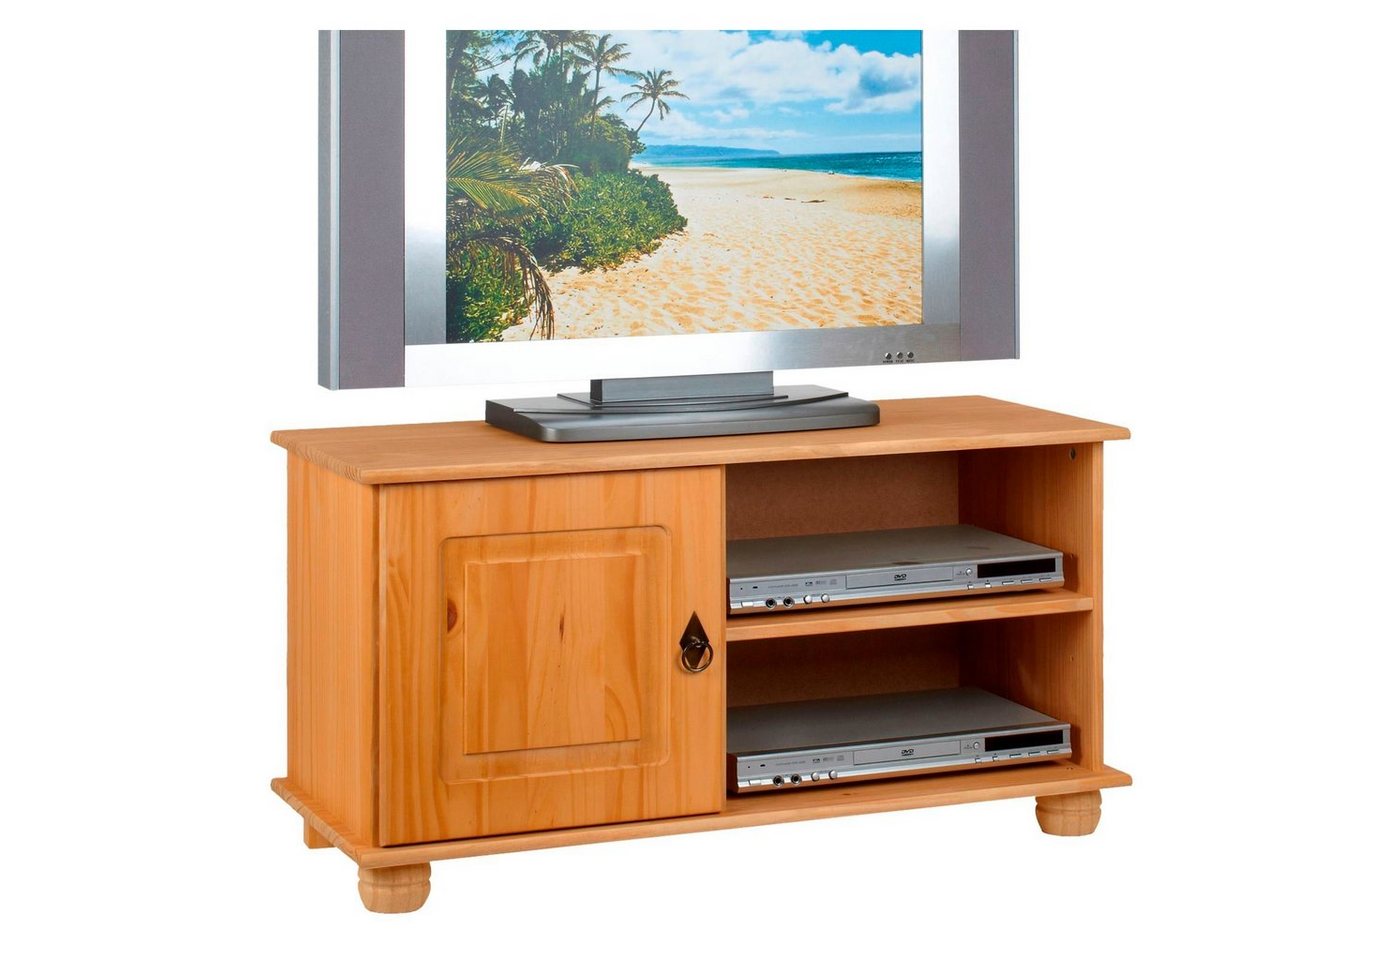 IDIMEX Lowboard BELFORT, TV Möbel Lowboard Kiefer massiv 1 Tür 2 Ablagen Fernsehtisch TV Möbel von IDIMEX